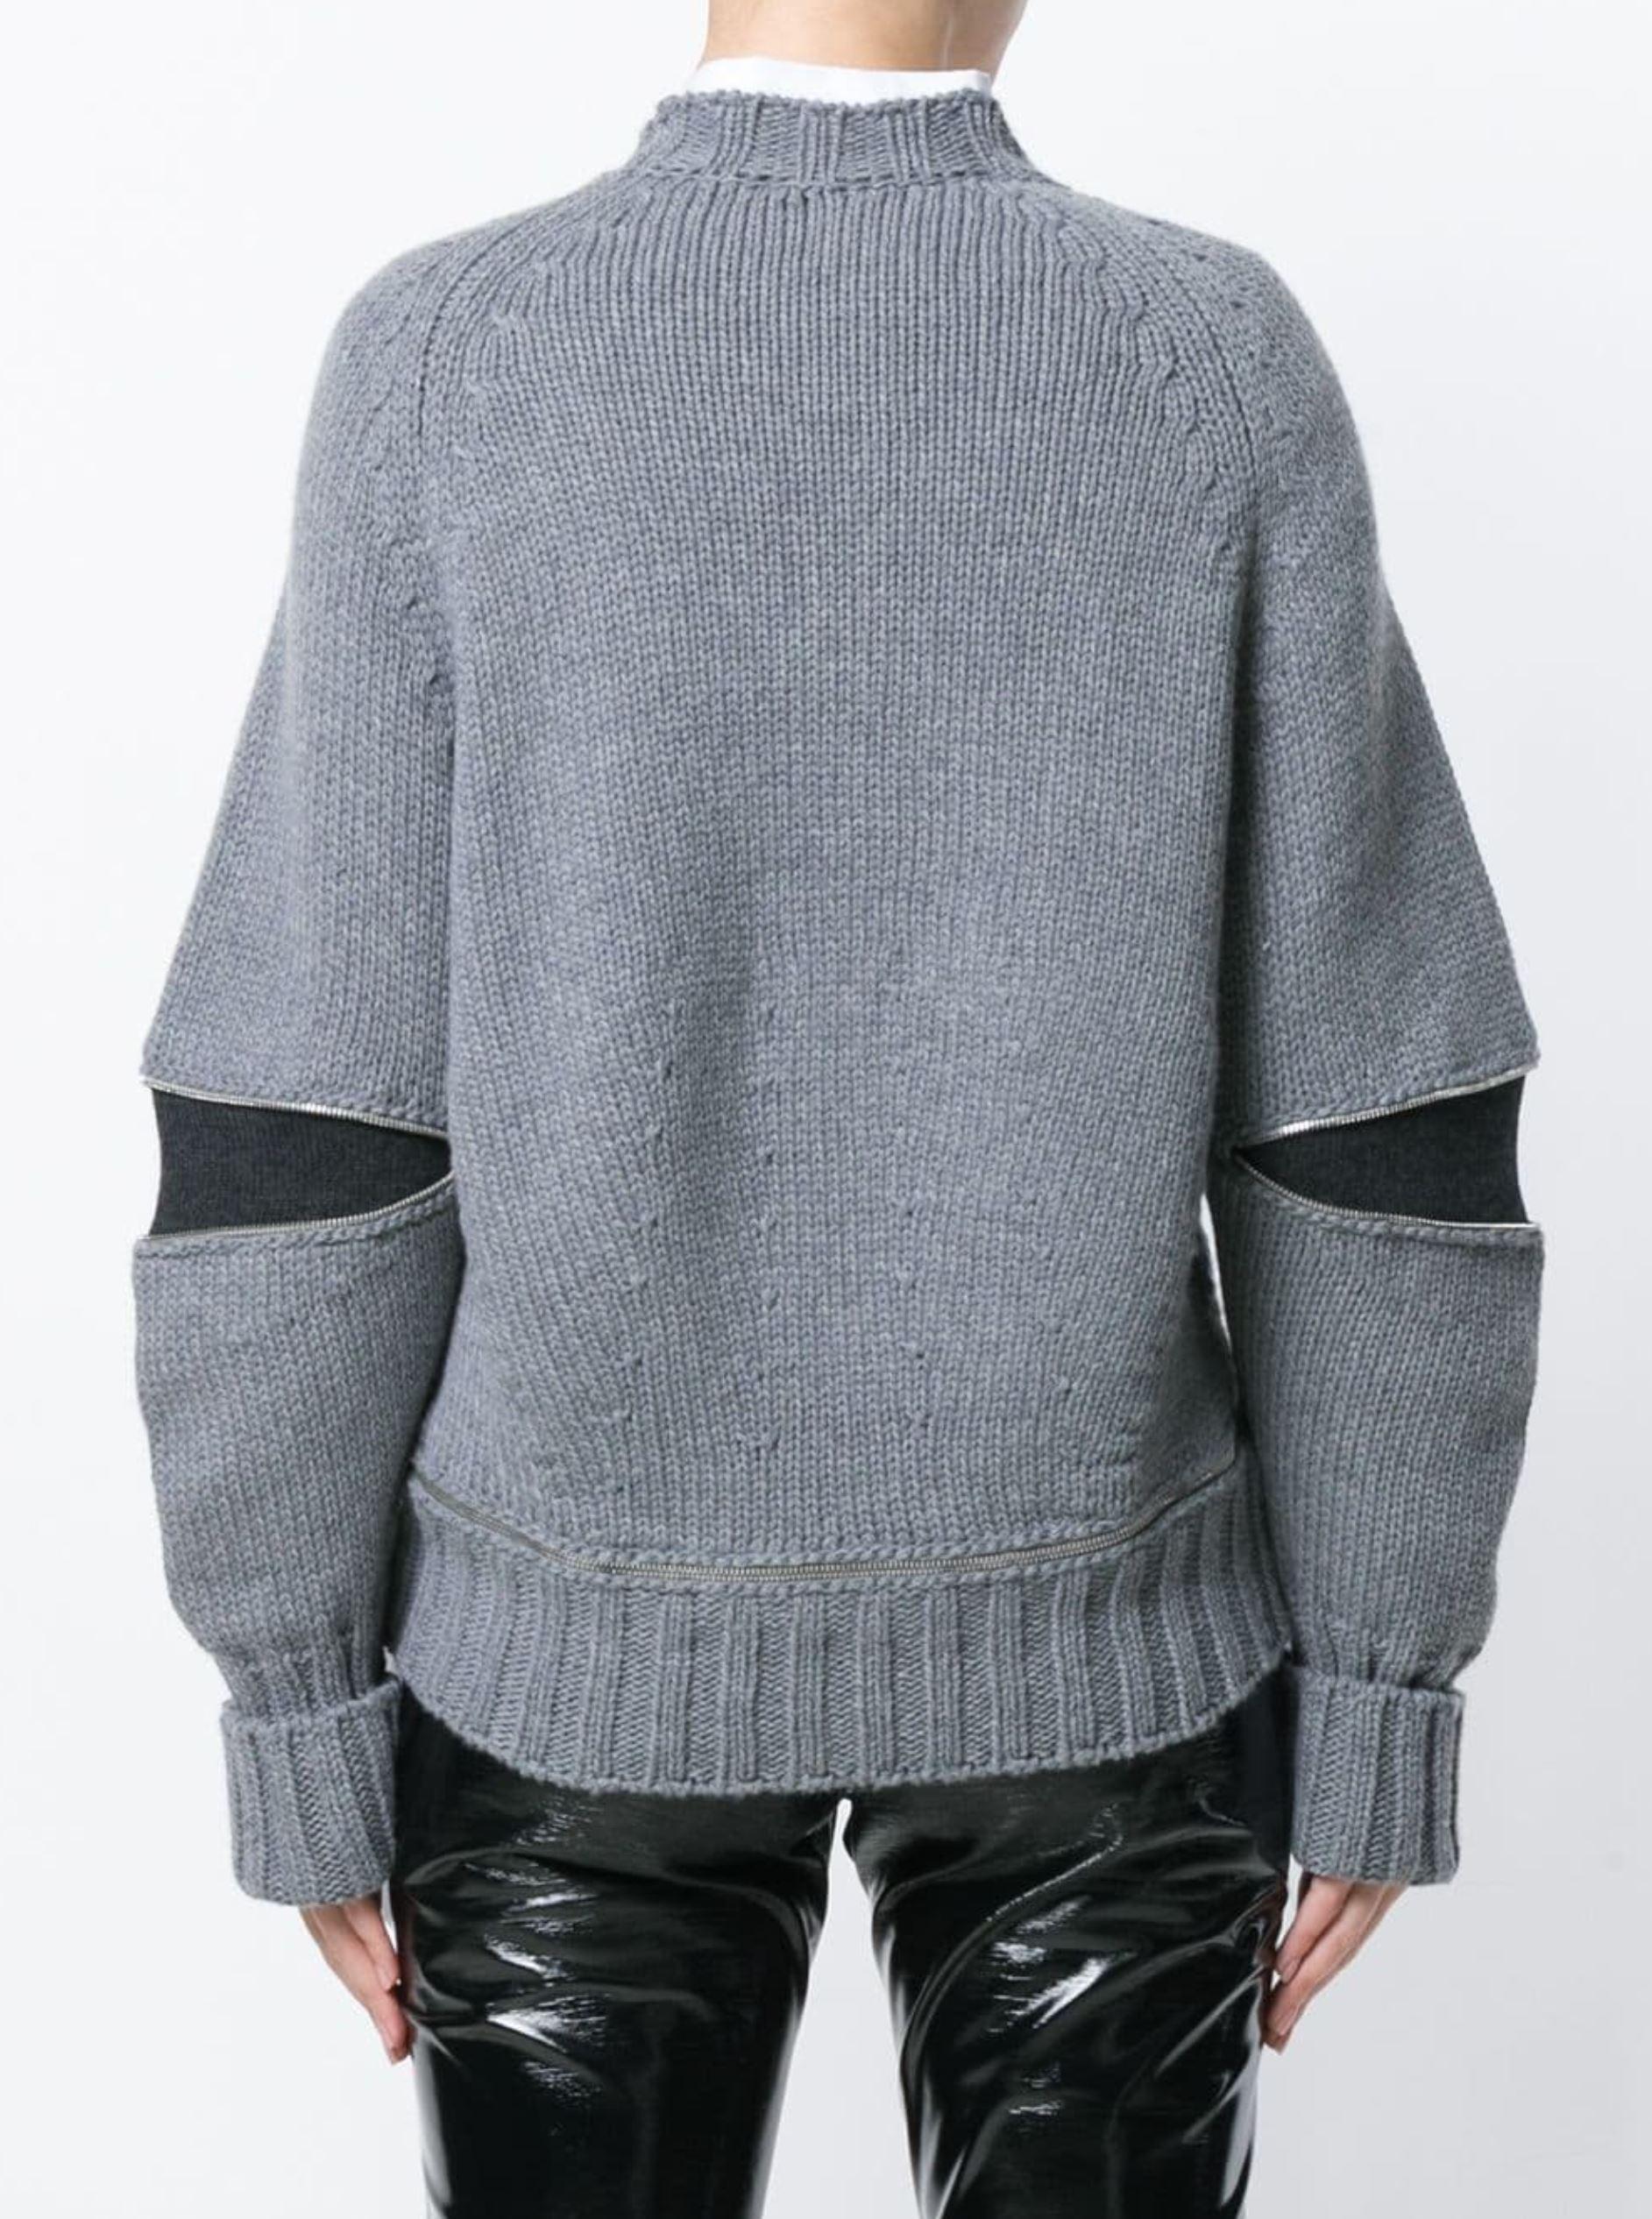 Women's New Laura Dern Big Little Lies Alexander McQueen Argyle Sweater  $1295